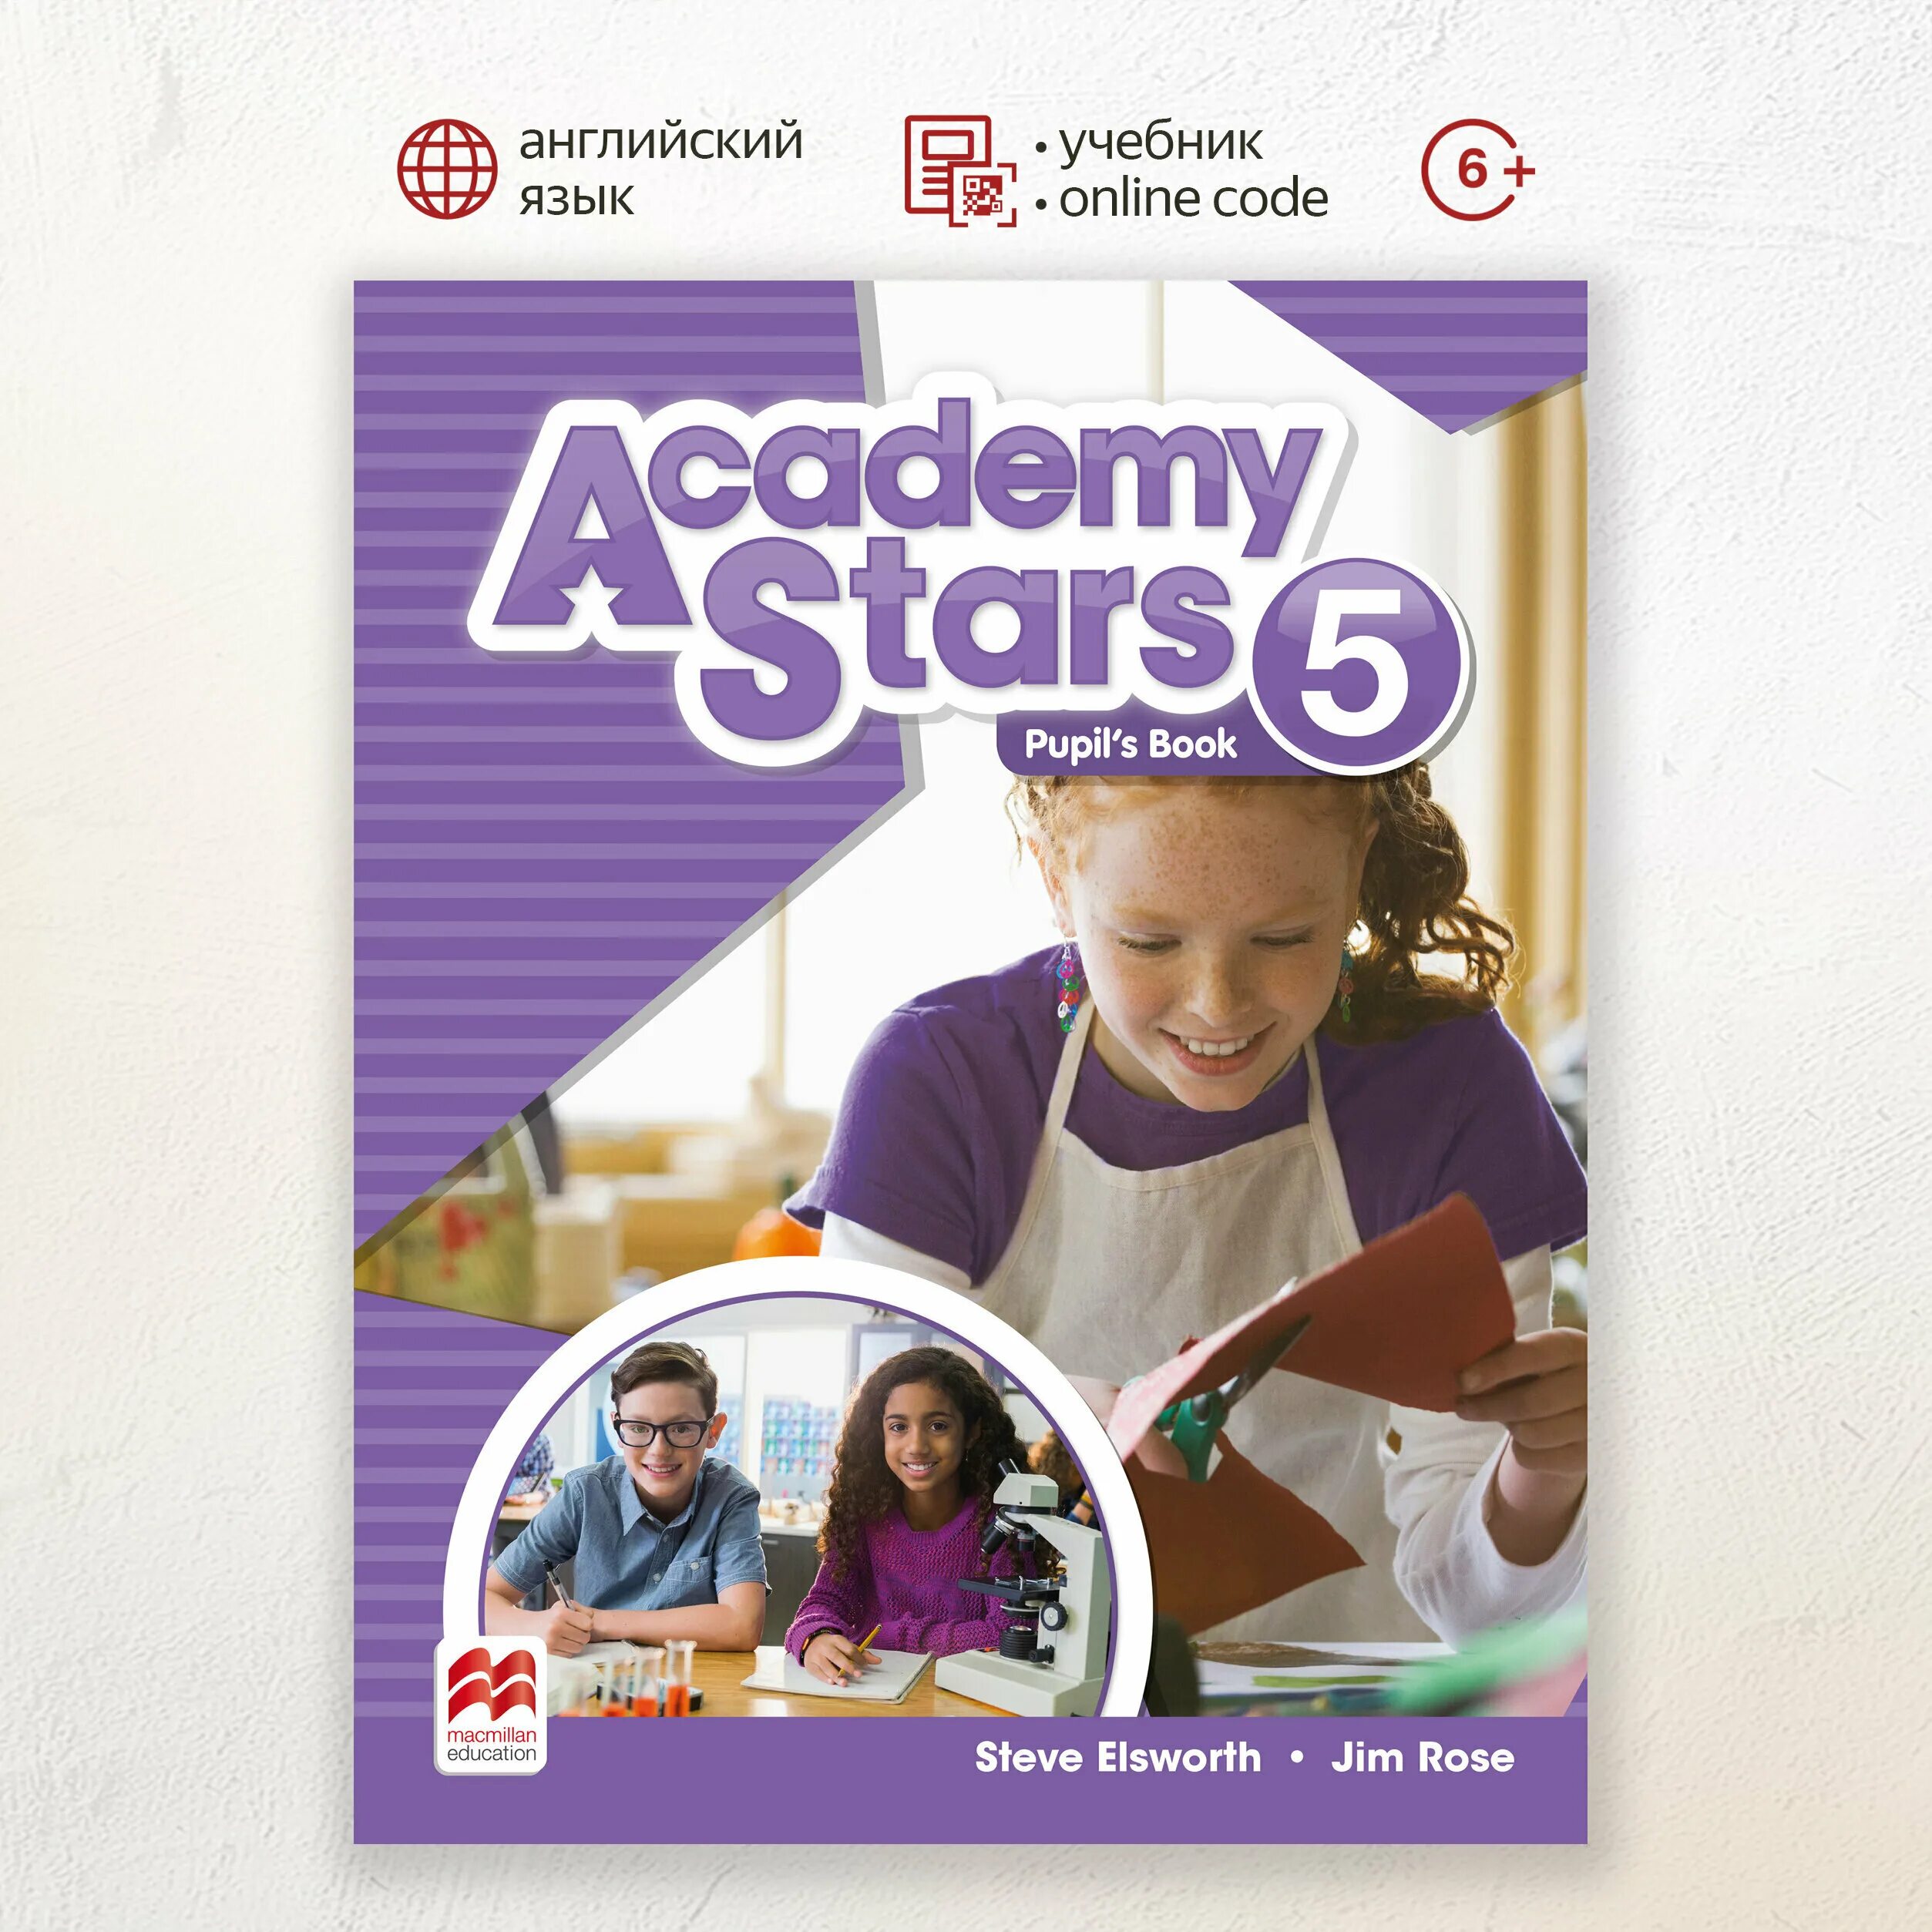 Английский язык pupils book. Academy Stars 1 pupil's book и Workbook. Academy Stars 2 pupils book. Academy Stars 2 pupil's book и Workbook. Academy Stars.